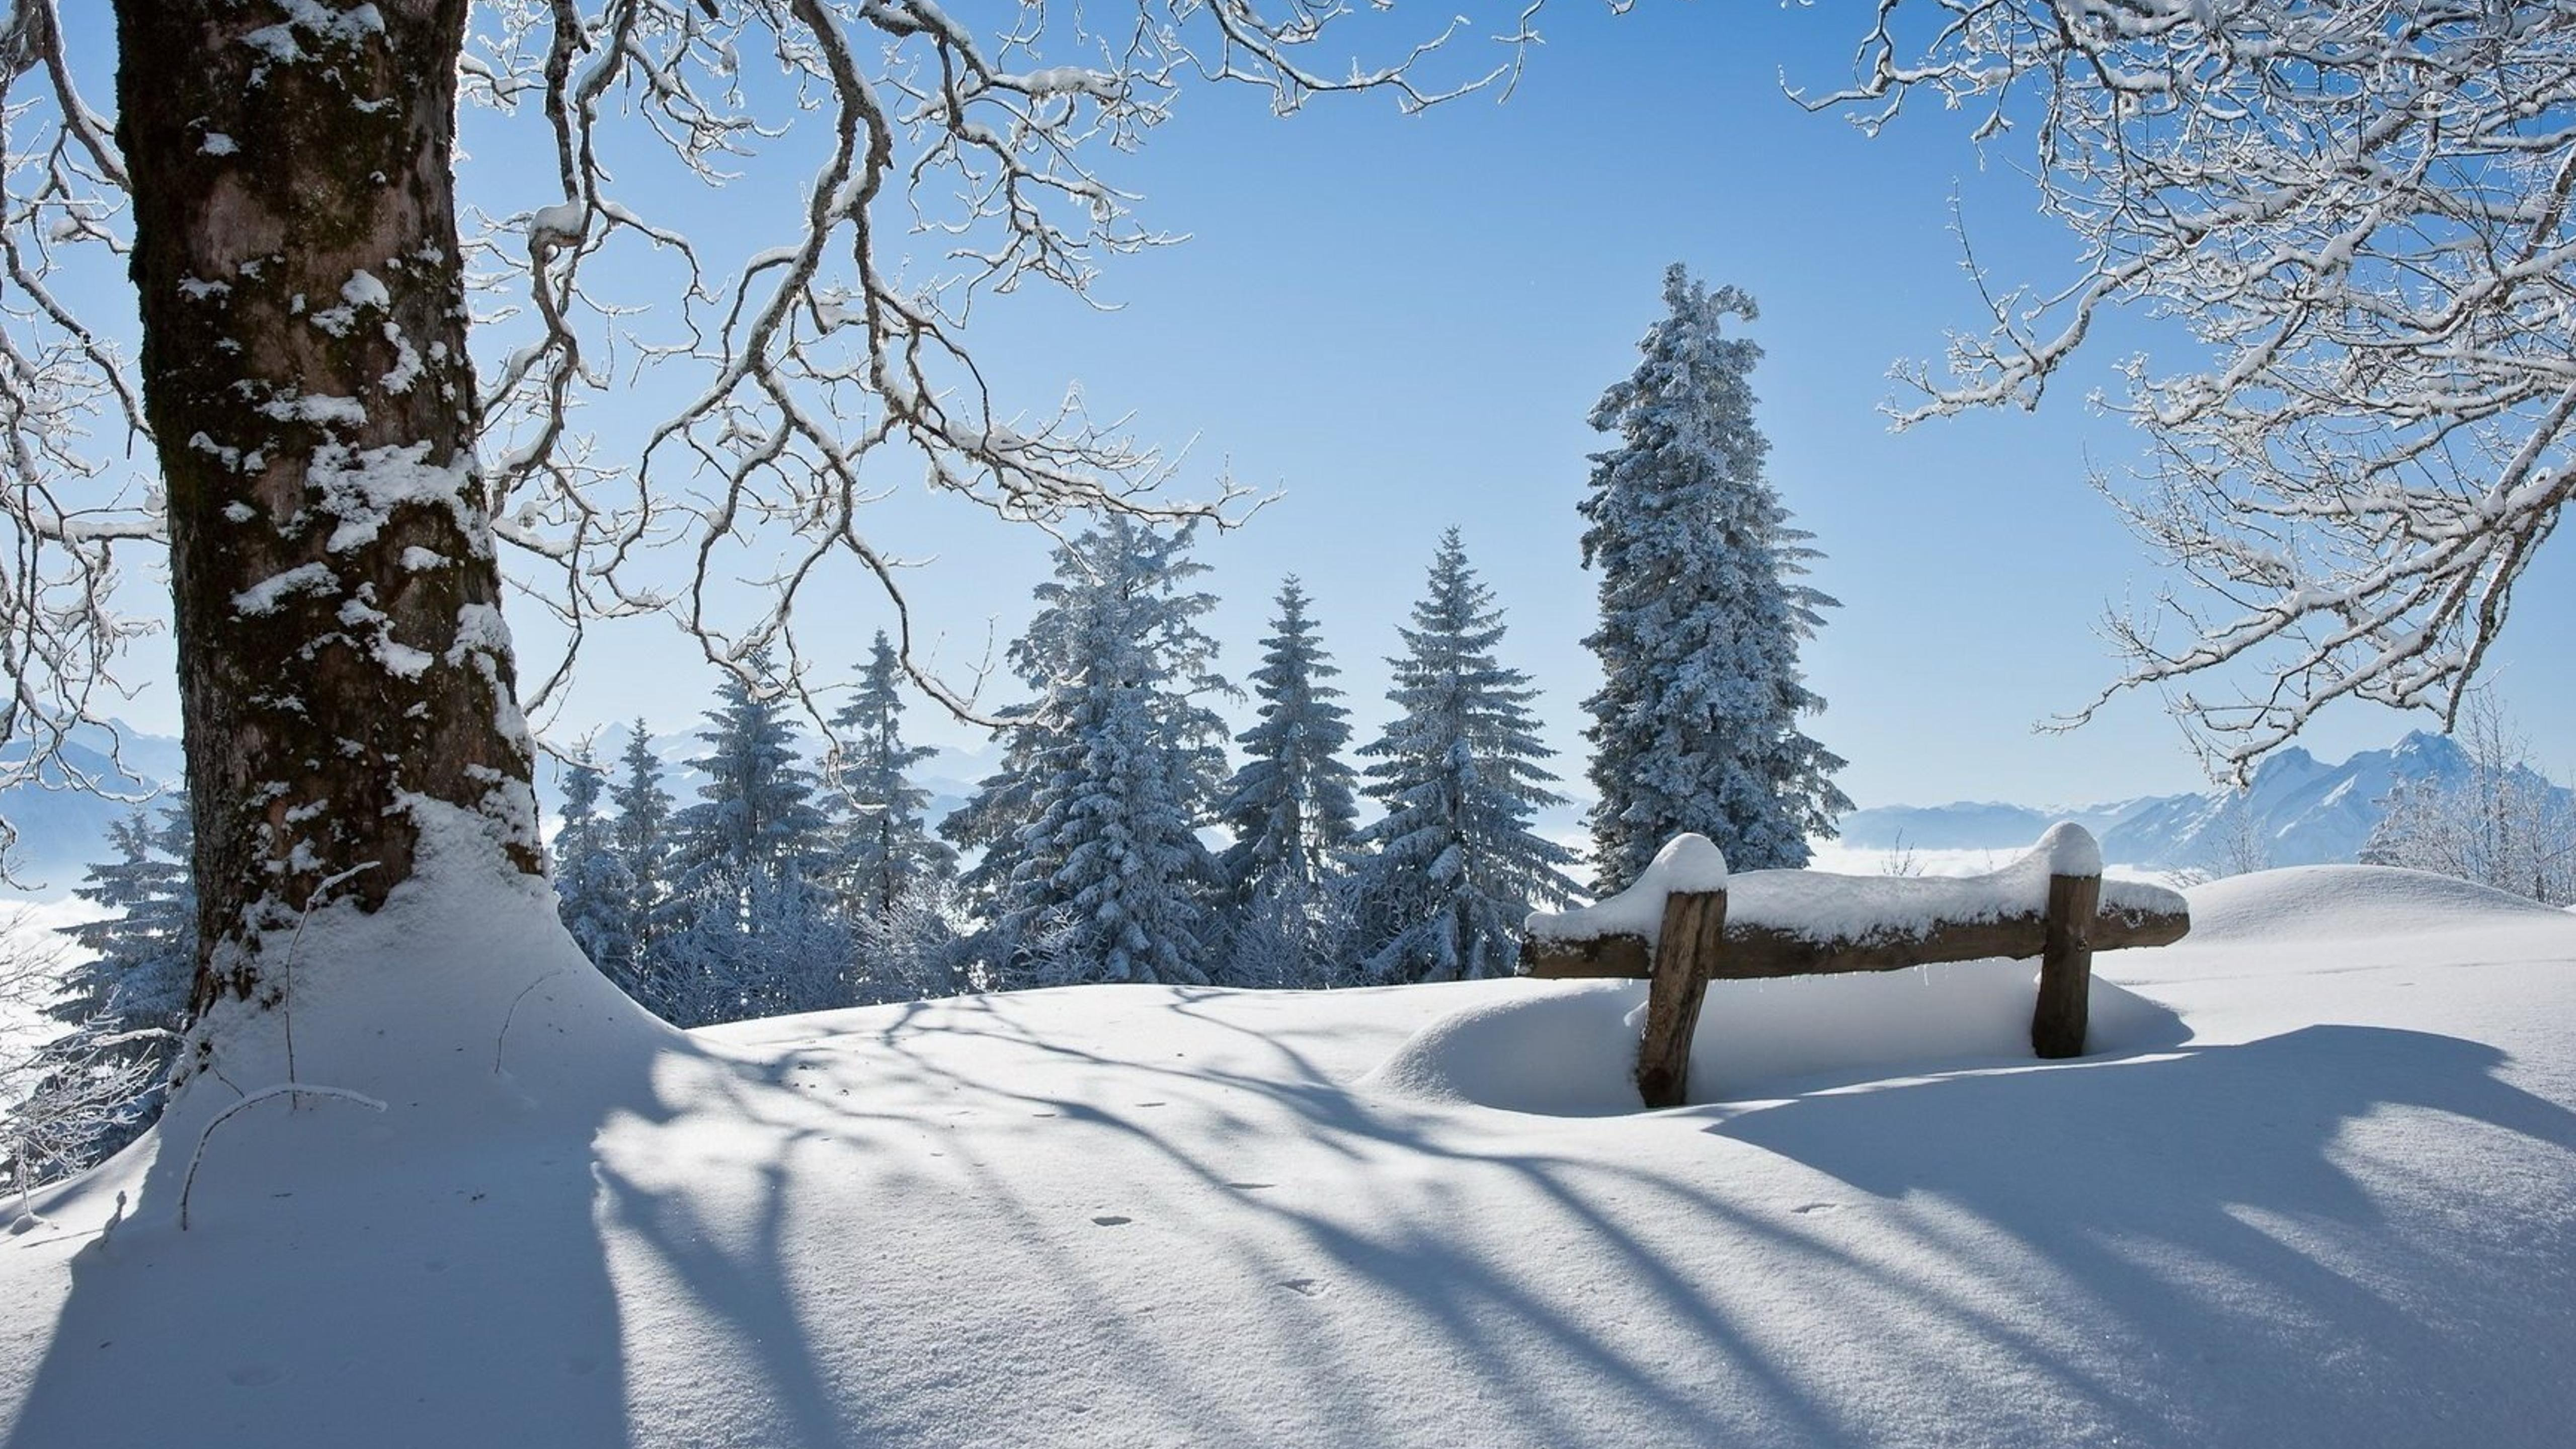 Пейзаж зимы. Зима. Зимний пейзаж. Снежная зима. Снежный пейзаж.